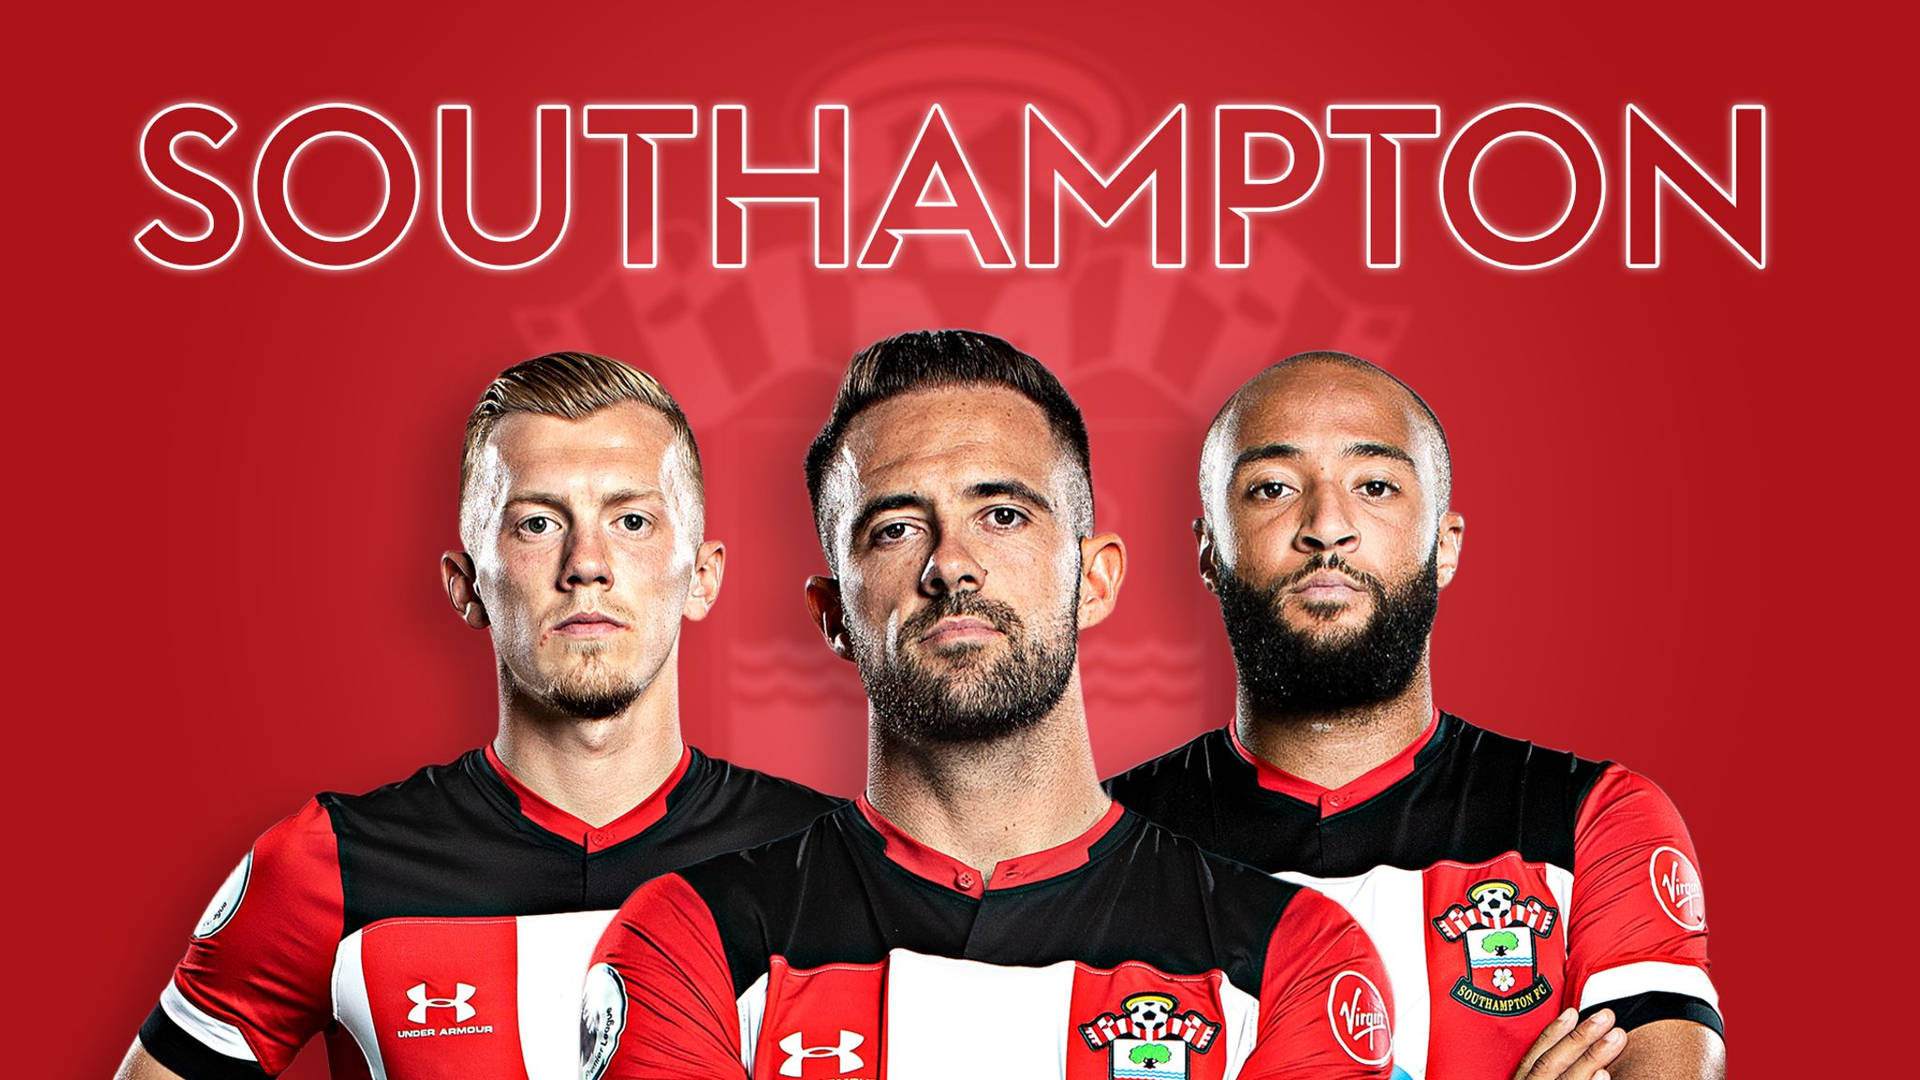 Southampton Fc Players Photo Wallpaper